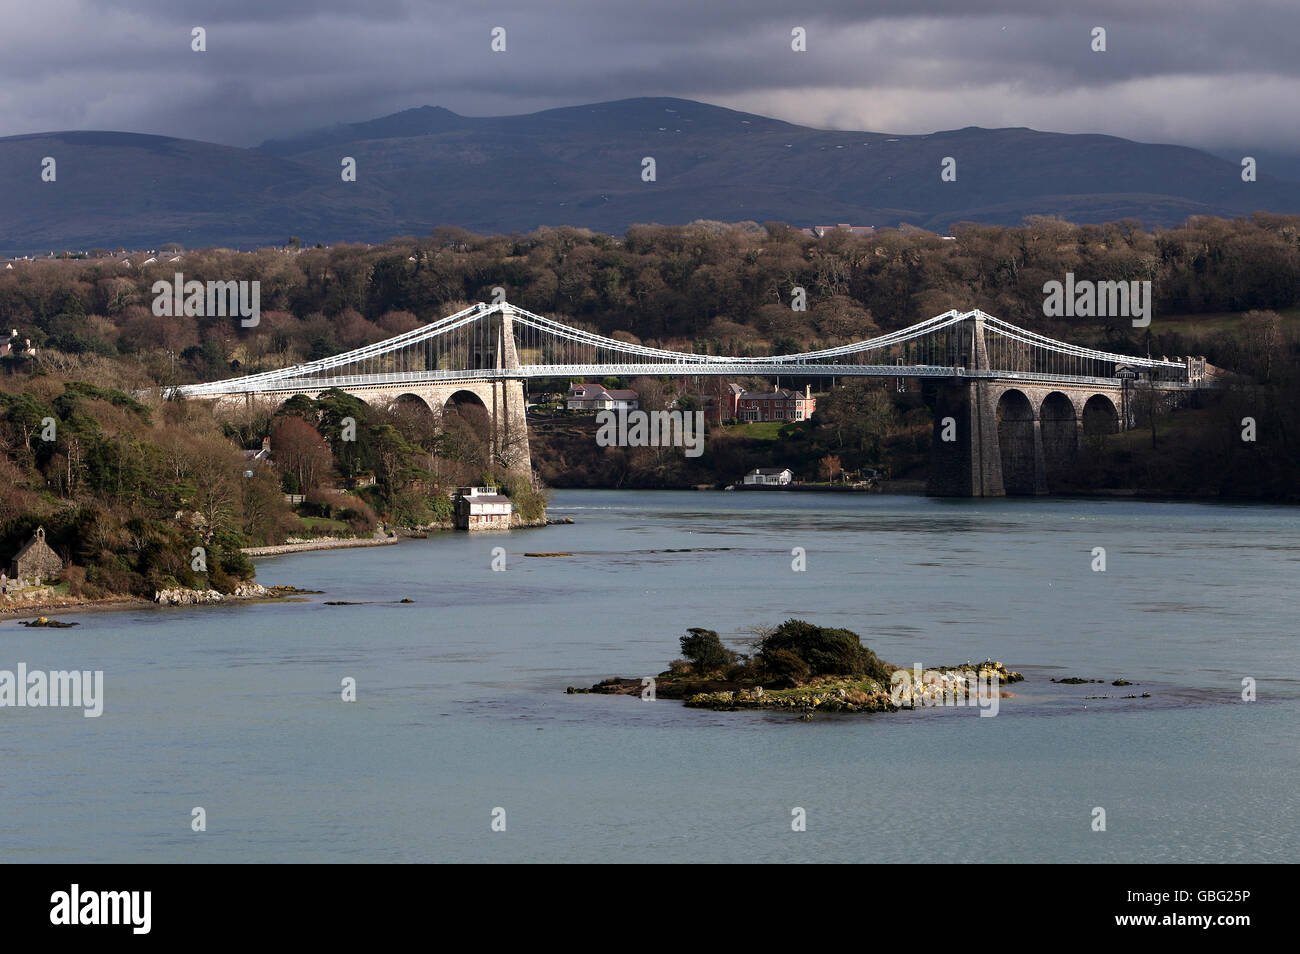 Pont suspendu de Menai qui traverse le détroit de Menai entre Anglesey et le continent du nord du pays de Galles. Conçu par Thomas Telford et terminé en 1826. Banque D'Images